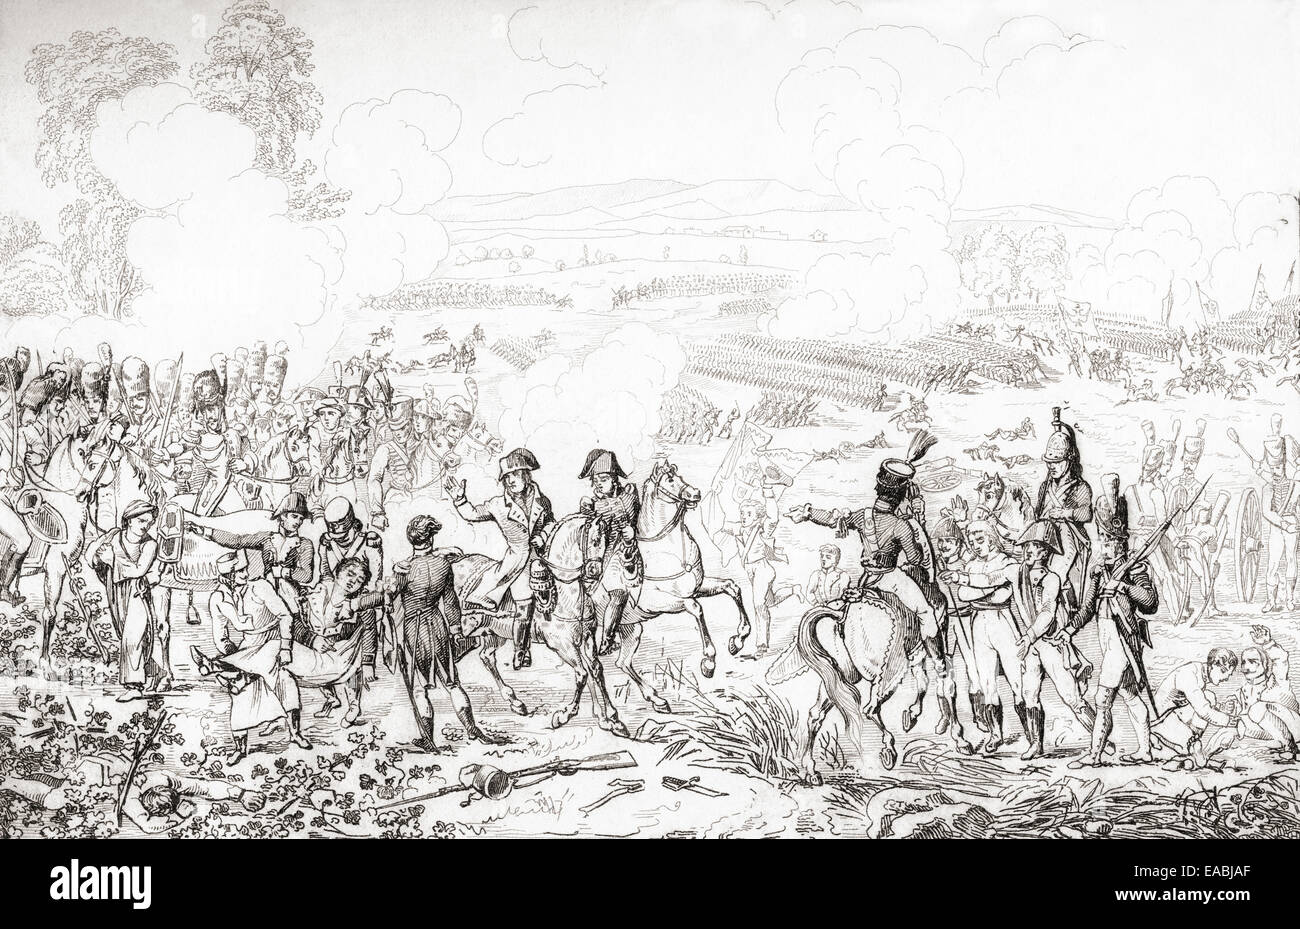 La bataille de Marengo, le 14 juin 1800, opposant les forces autrichiennes et françaises. Banque D'Images